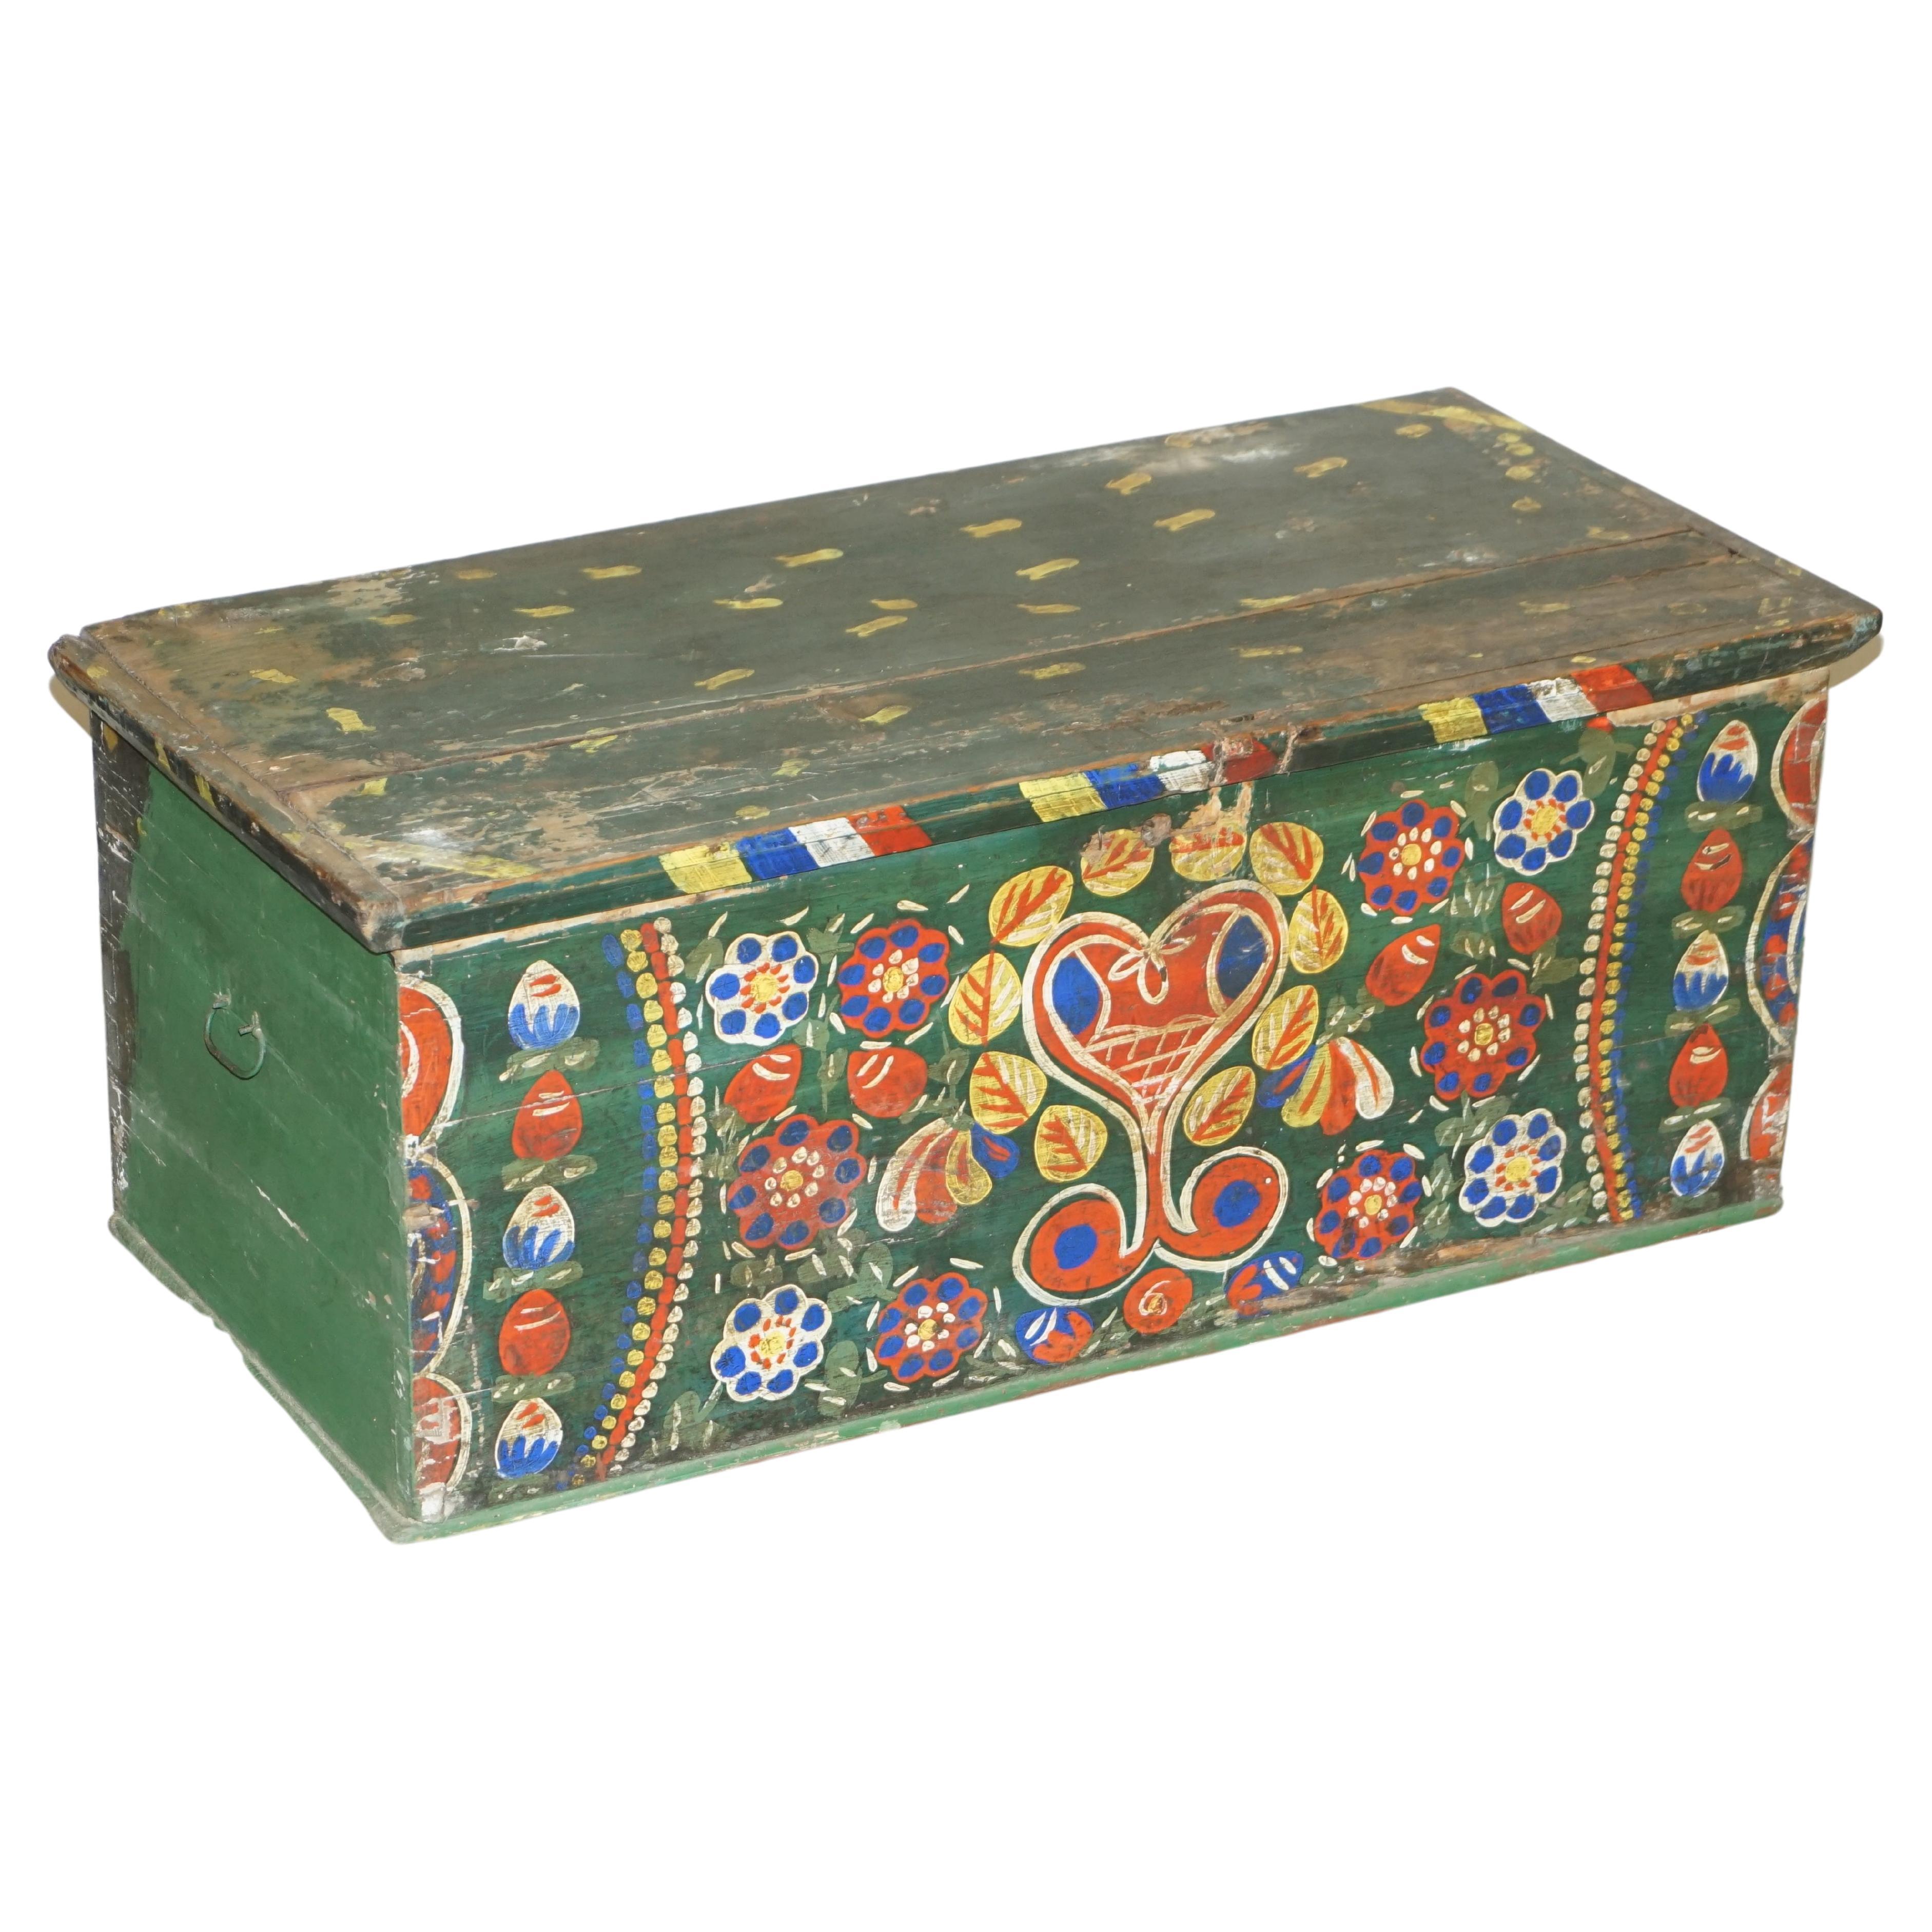 1901 datiert Love Heart Antike Original Farbe Rumänische Deckentruhe Truhe Koffer Truhe